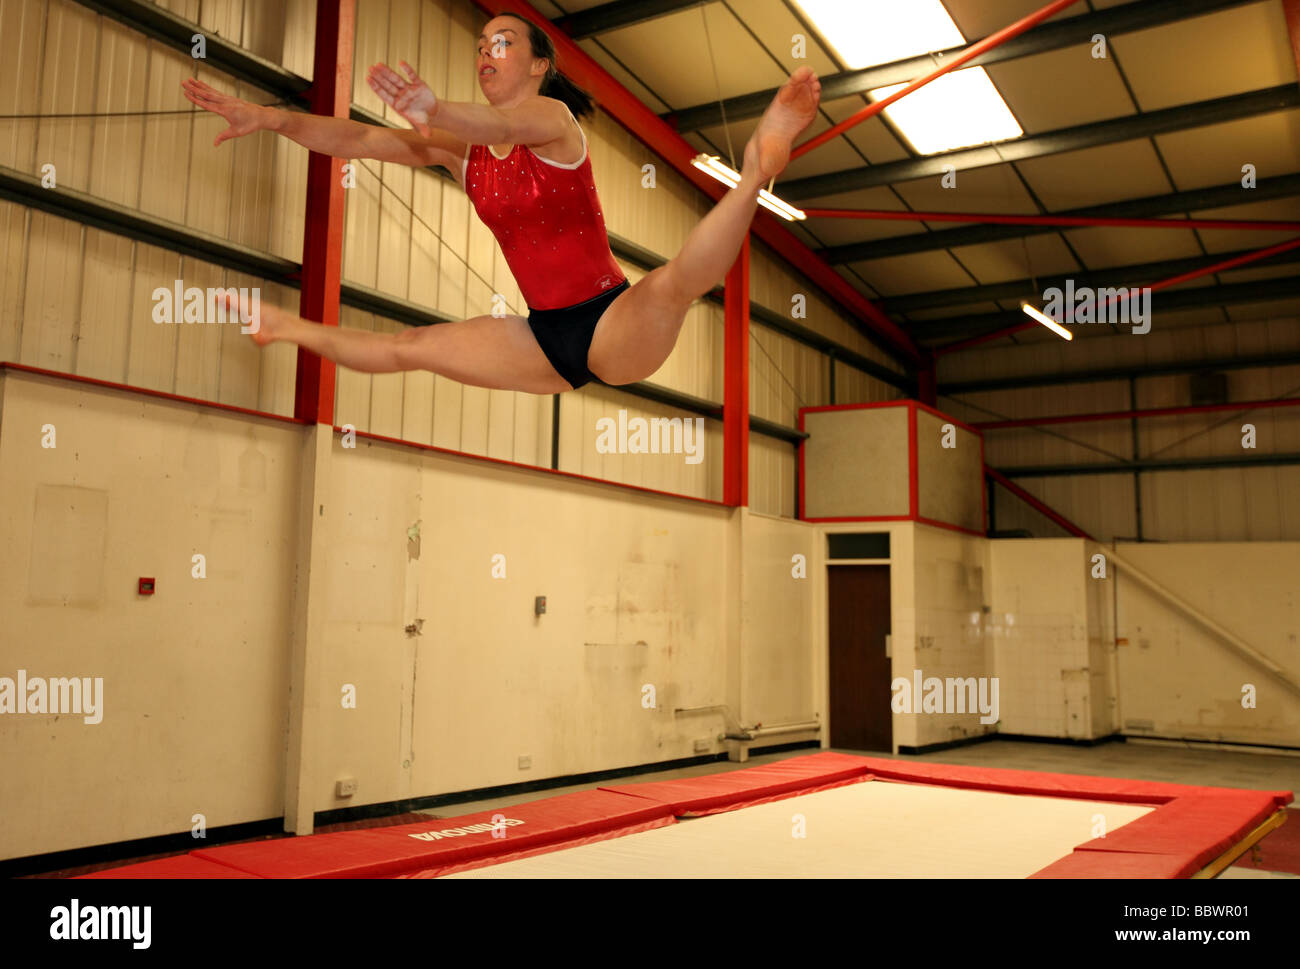 Doppelte europäischen Gymnastik Weltmeister Beth Tweddle an einem Training Veranstaltungsort in der Nähe von Liverpool, UK. Stockfoto